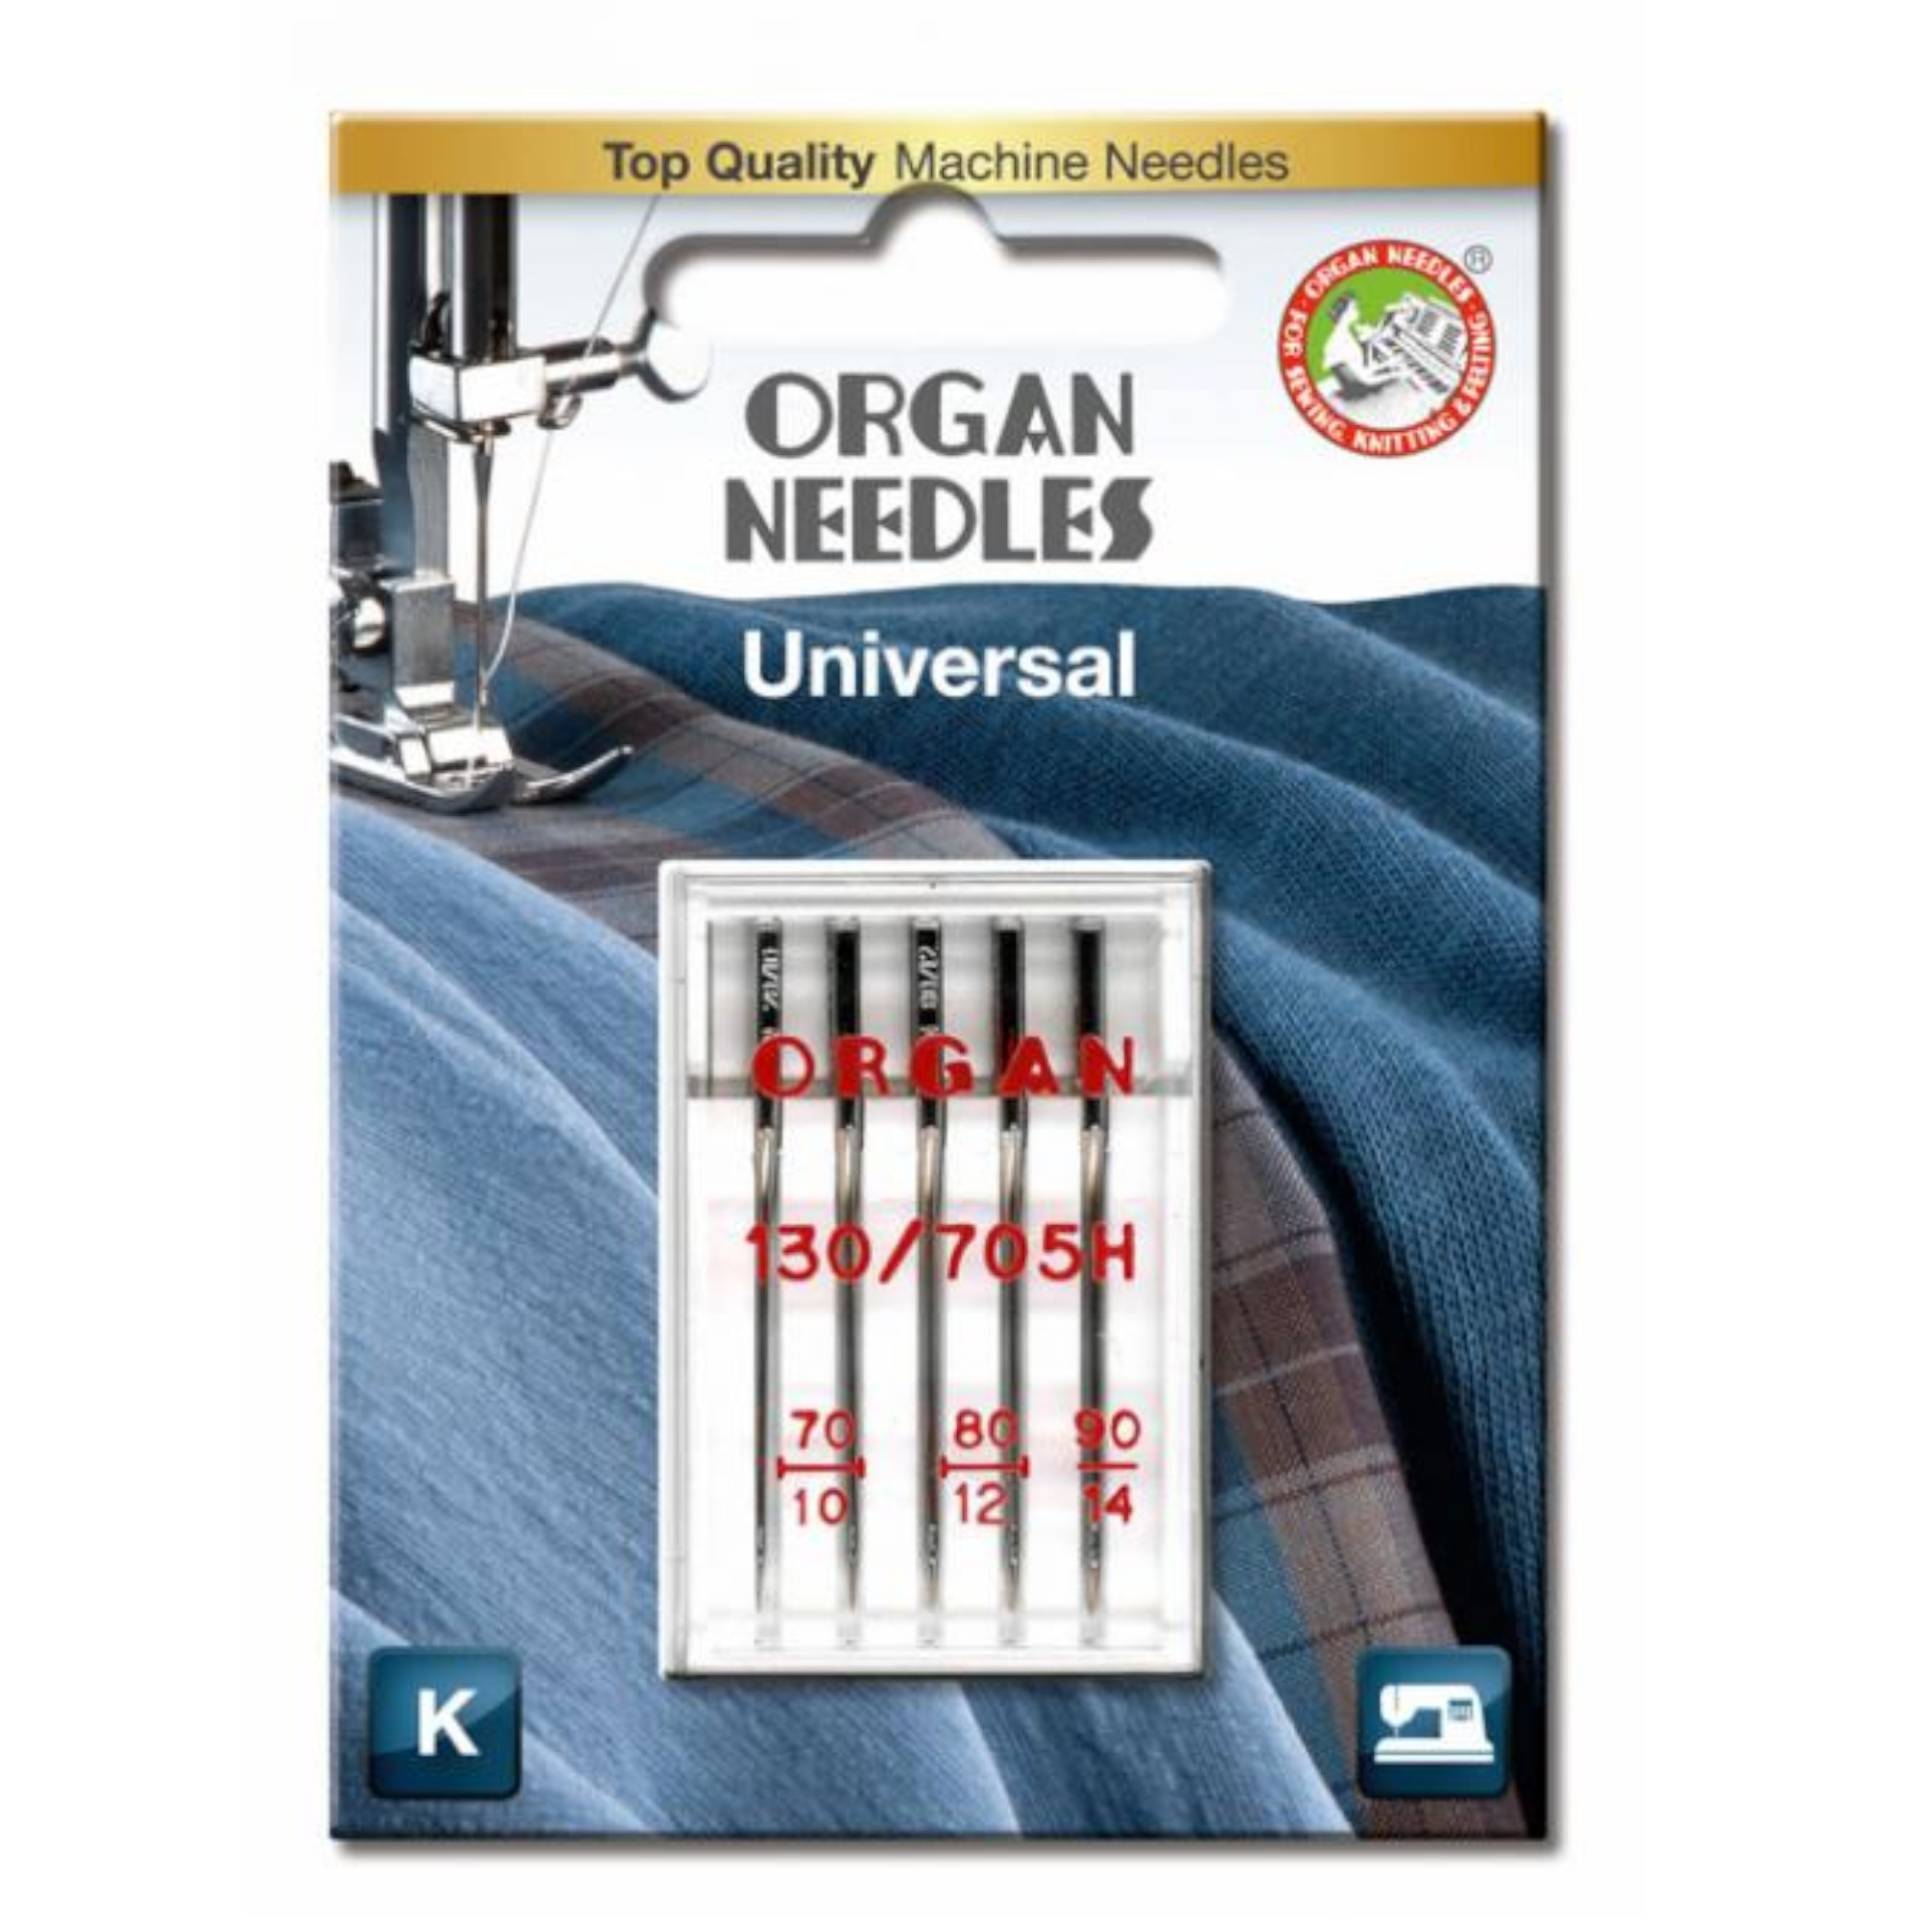 5 Organ Nähmaschinennadeln 130/705 H, Universal 70-90 von Stoffe Hemmers